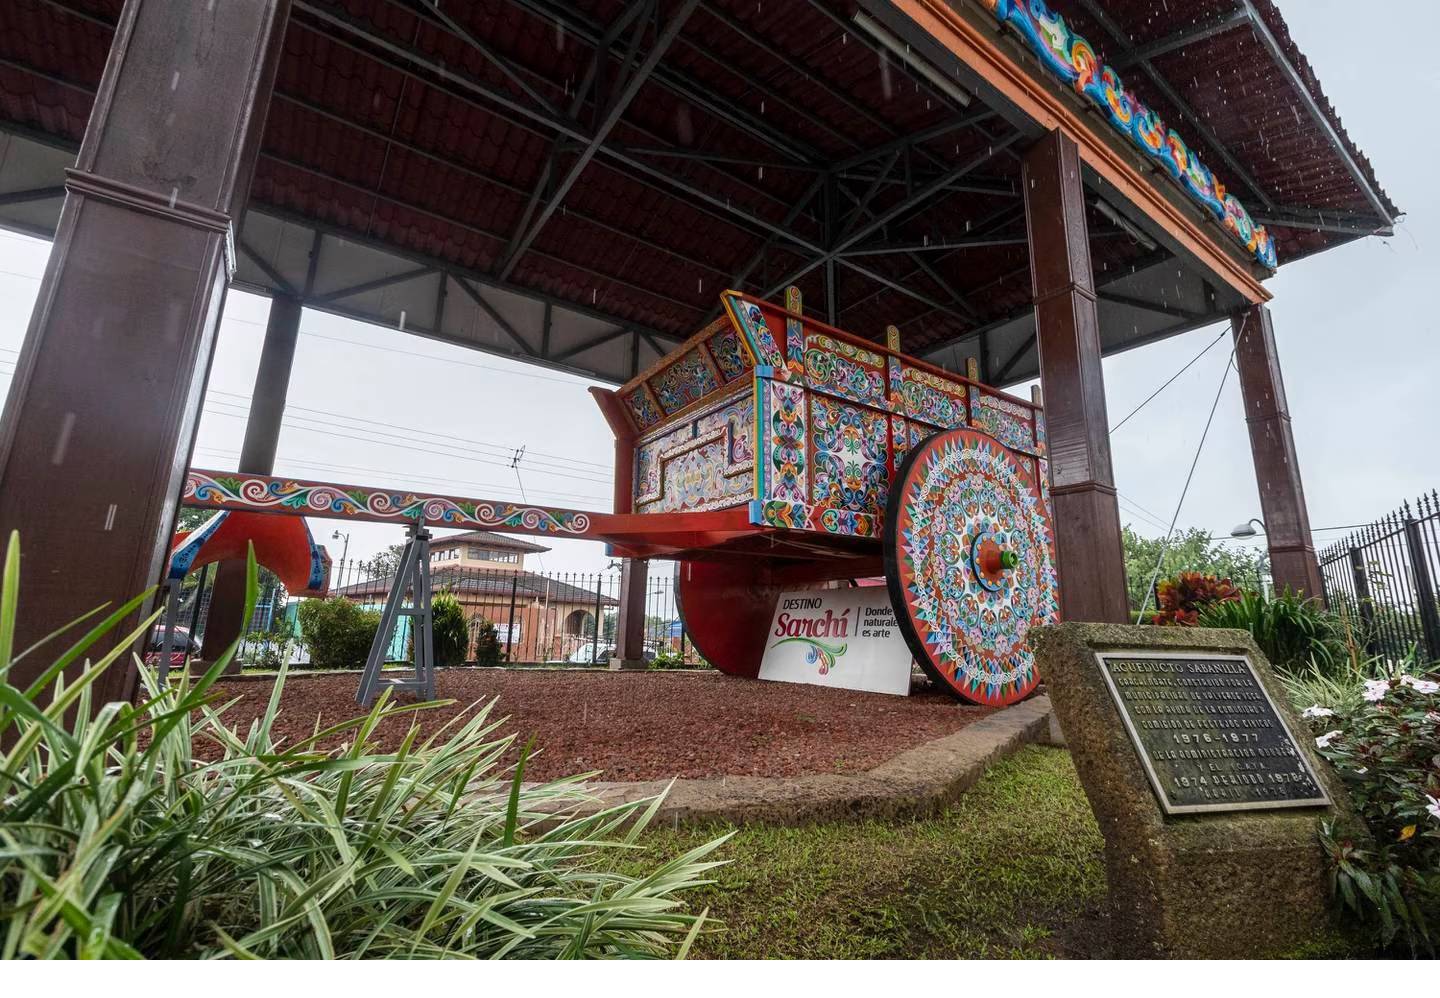 La tradicional carreta típica gigante ubicada en el Parque de Sarchí será restaurada a partir de este próximo jueves 2 de marzo, según confirma la Cámara de Comercio Industria y Turismo de Sarchí (CACITUS) y la Municipalidad de Sarchí